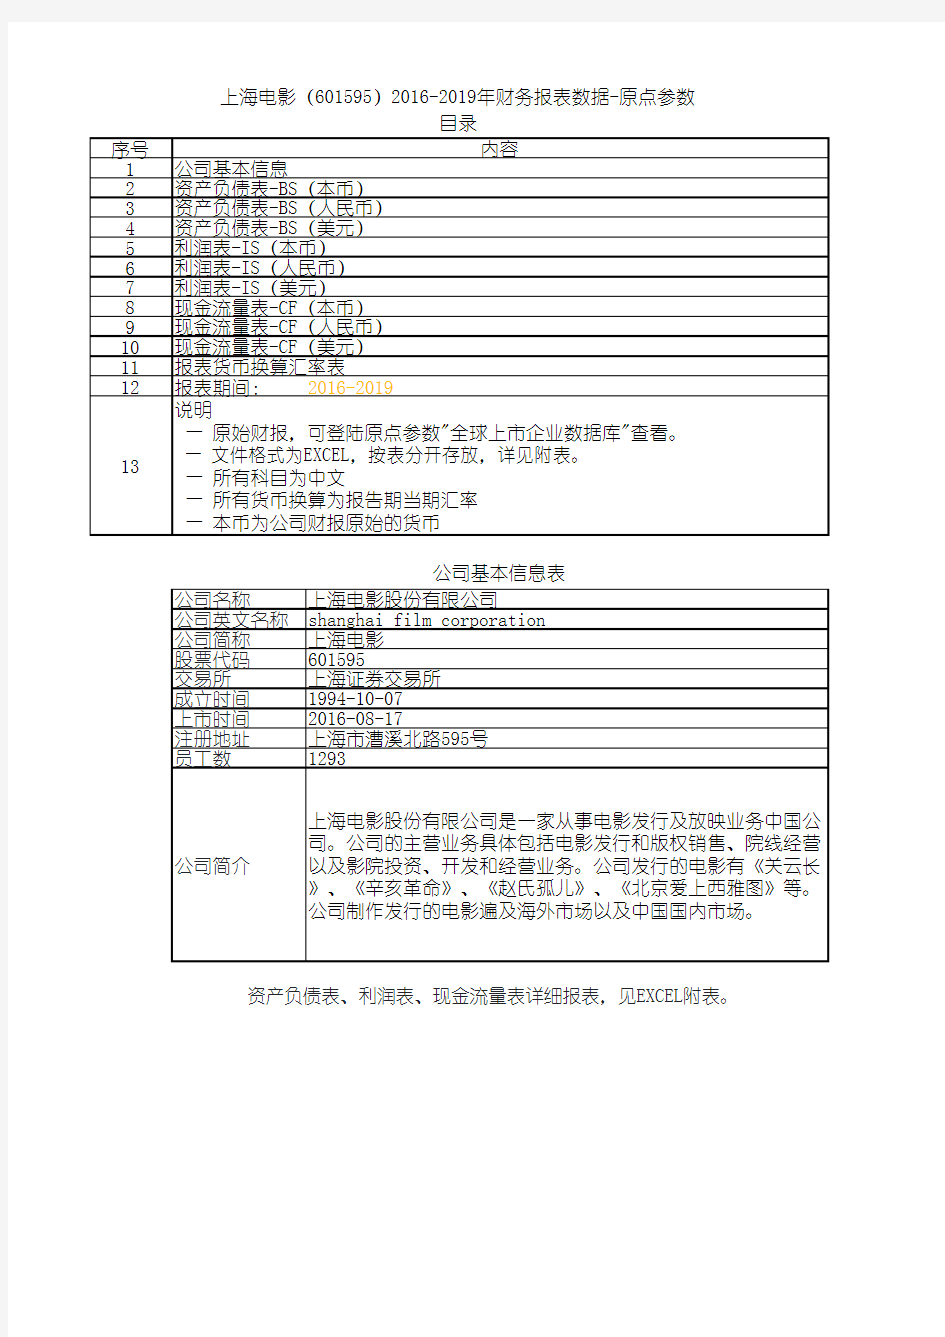 上海电影(601595)2016-2019年财务报表数据-原点参数